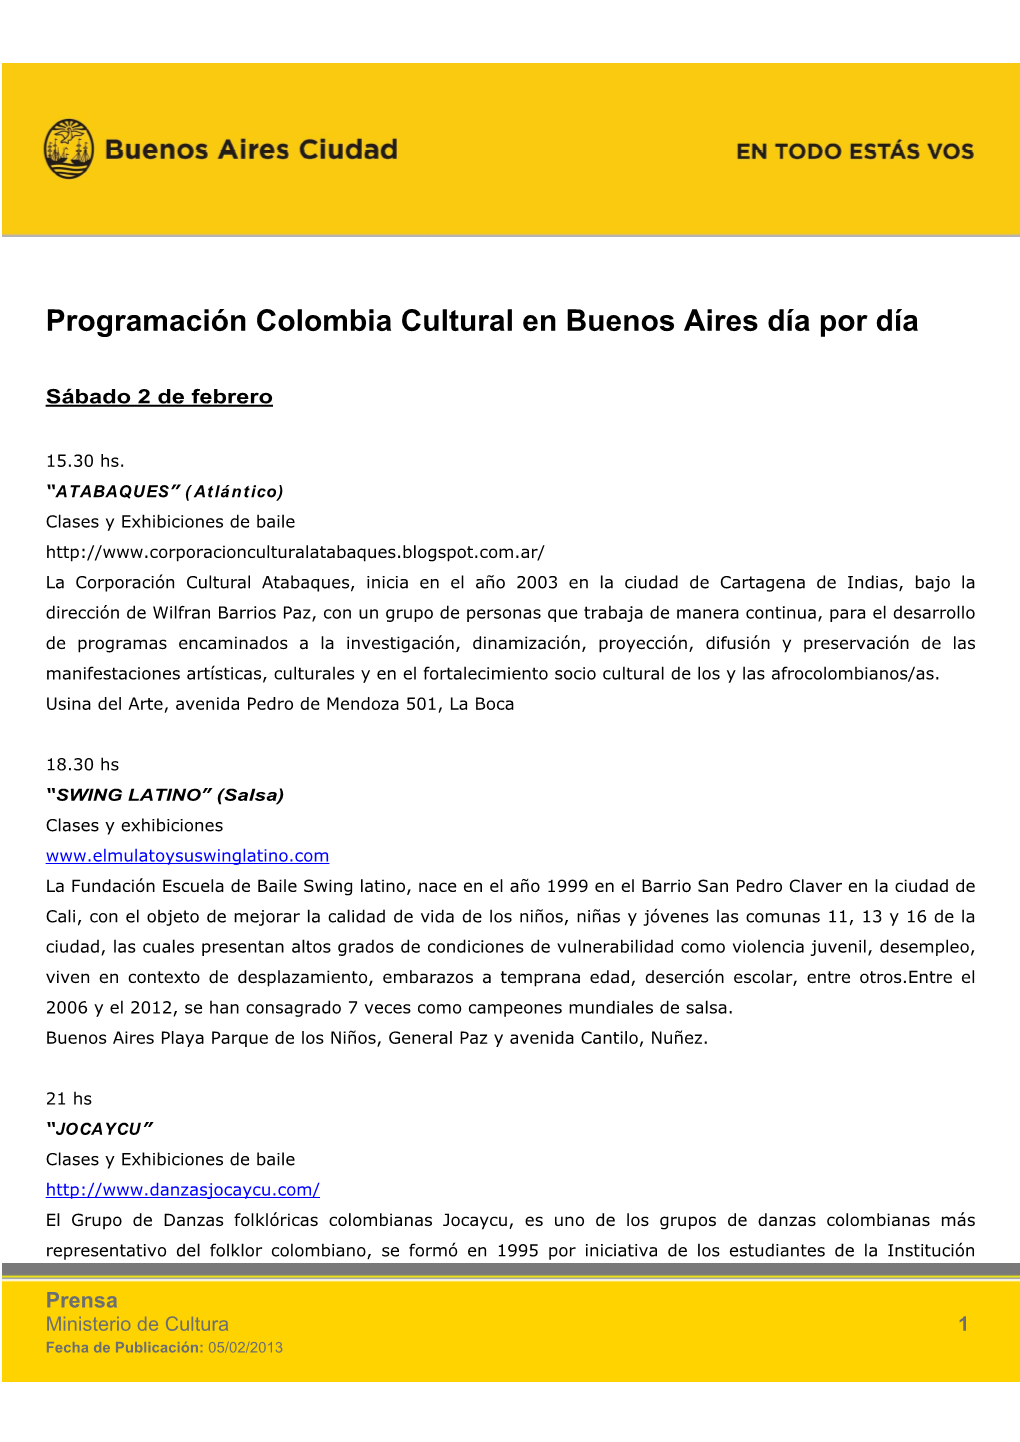 Programación Colombia Cultural En Bs As 2013